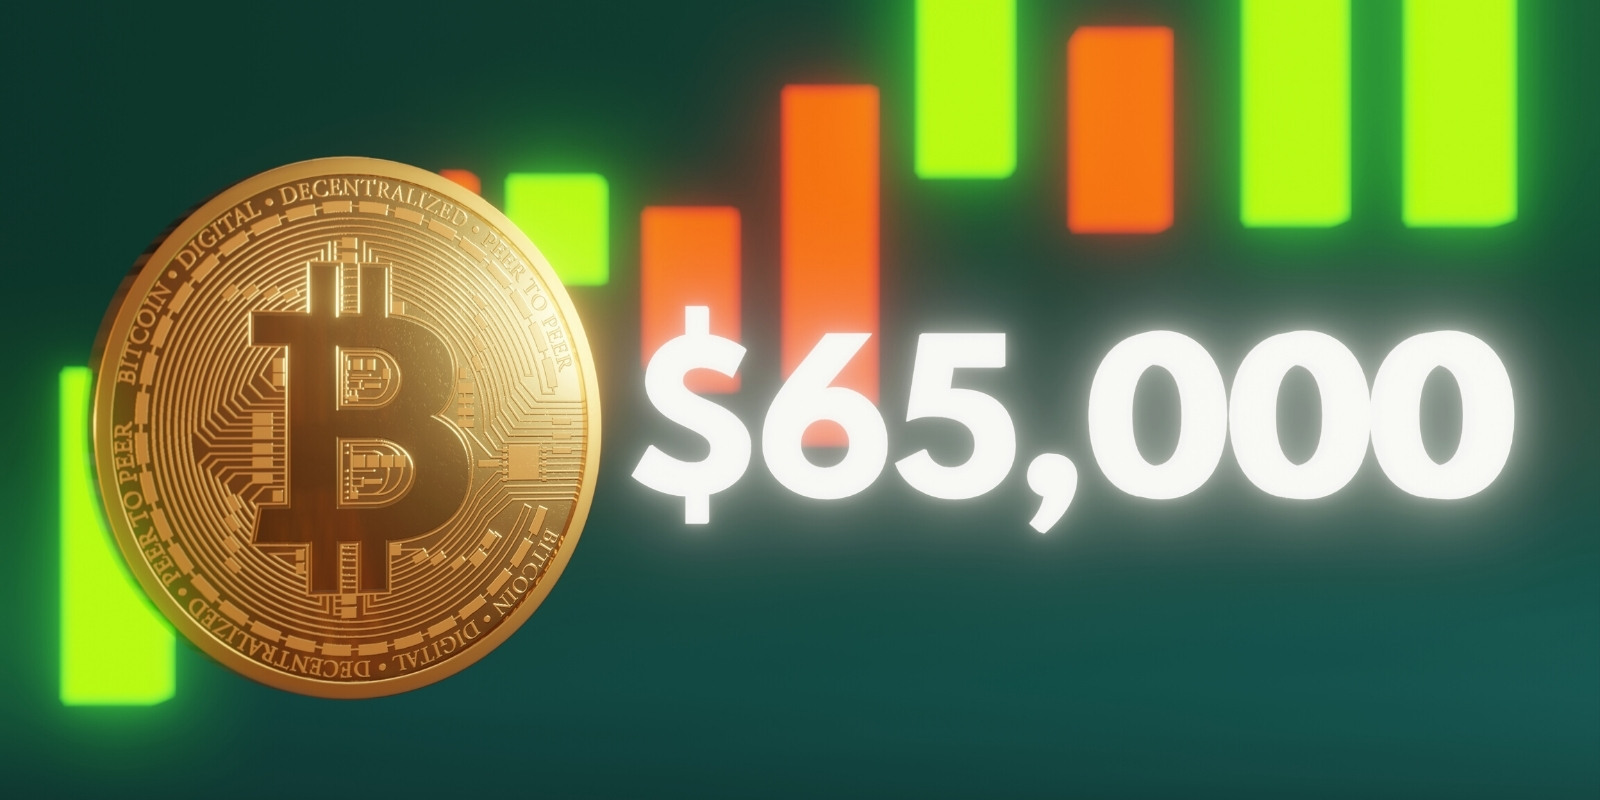 Le Bitcoin (BTC) s'offre un nouveau record historique en dépassant les 65 000 dollars